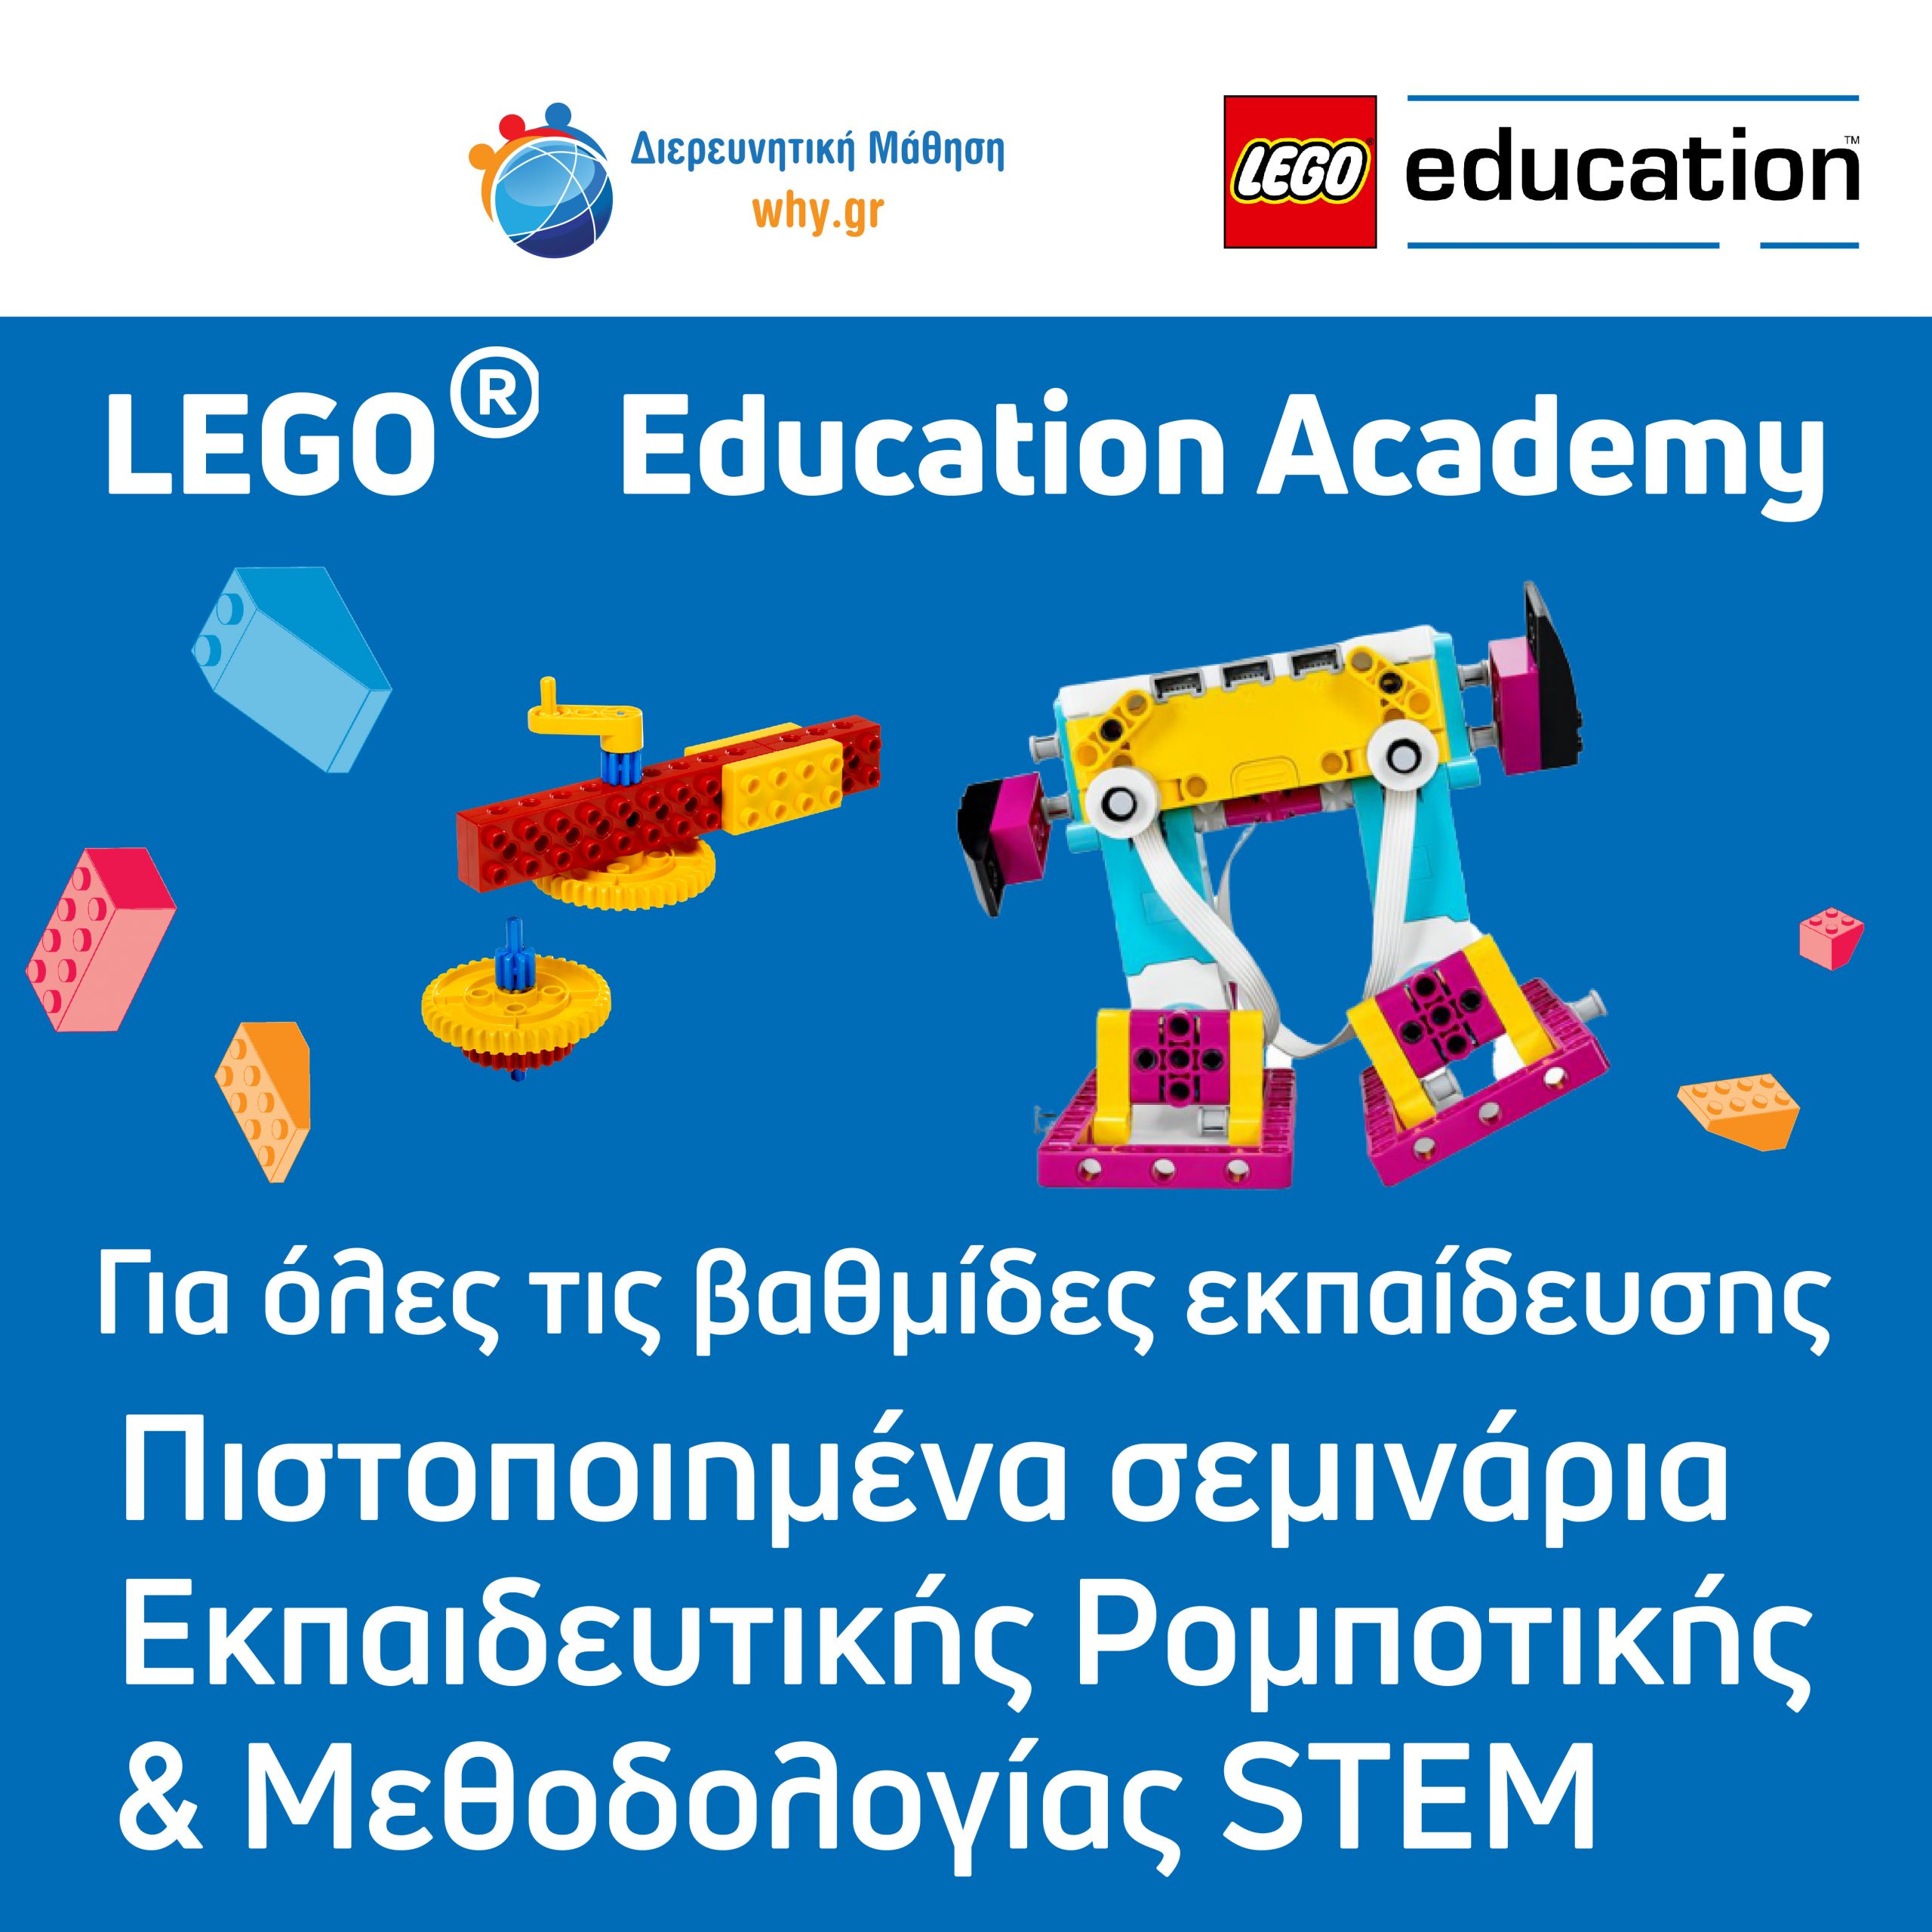 Murciélago Testificar celestial LEGO Education Academy - Διερευνητική Μάθηση